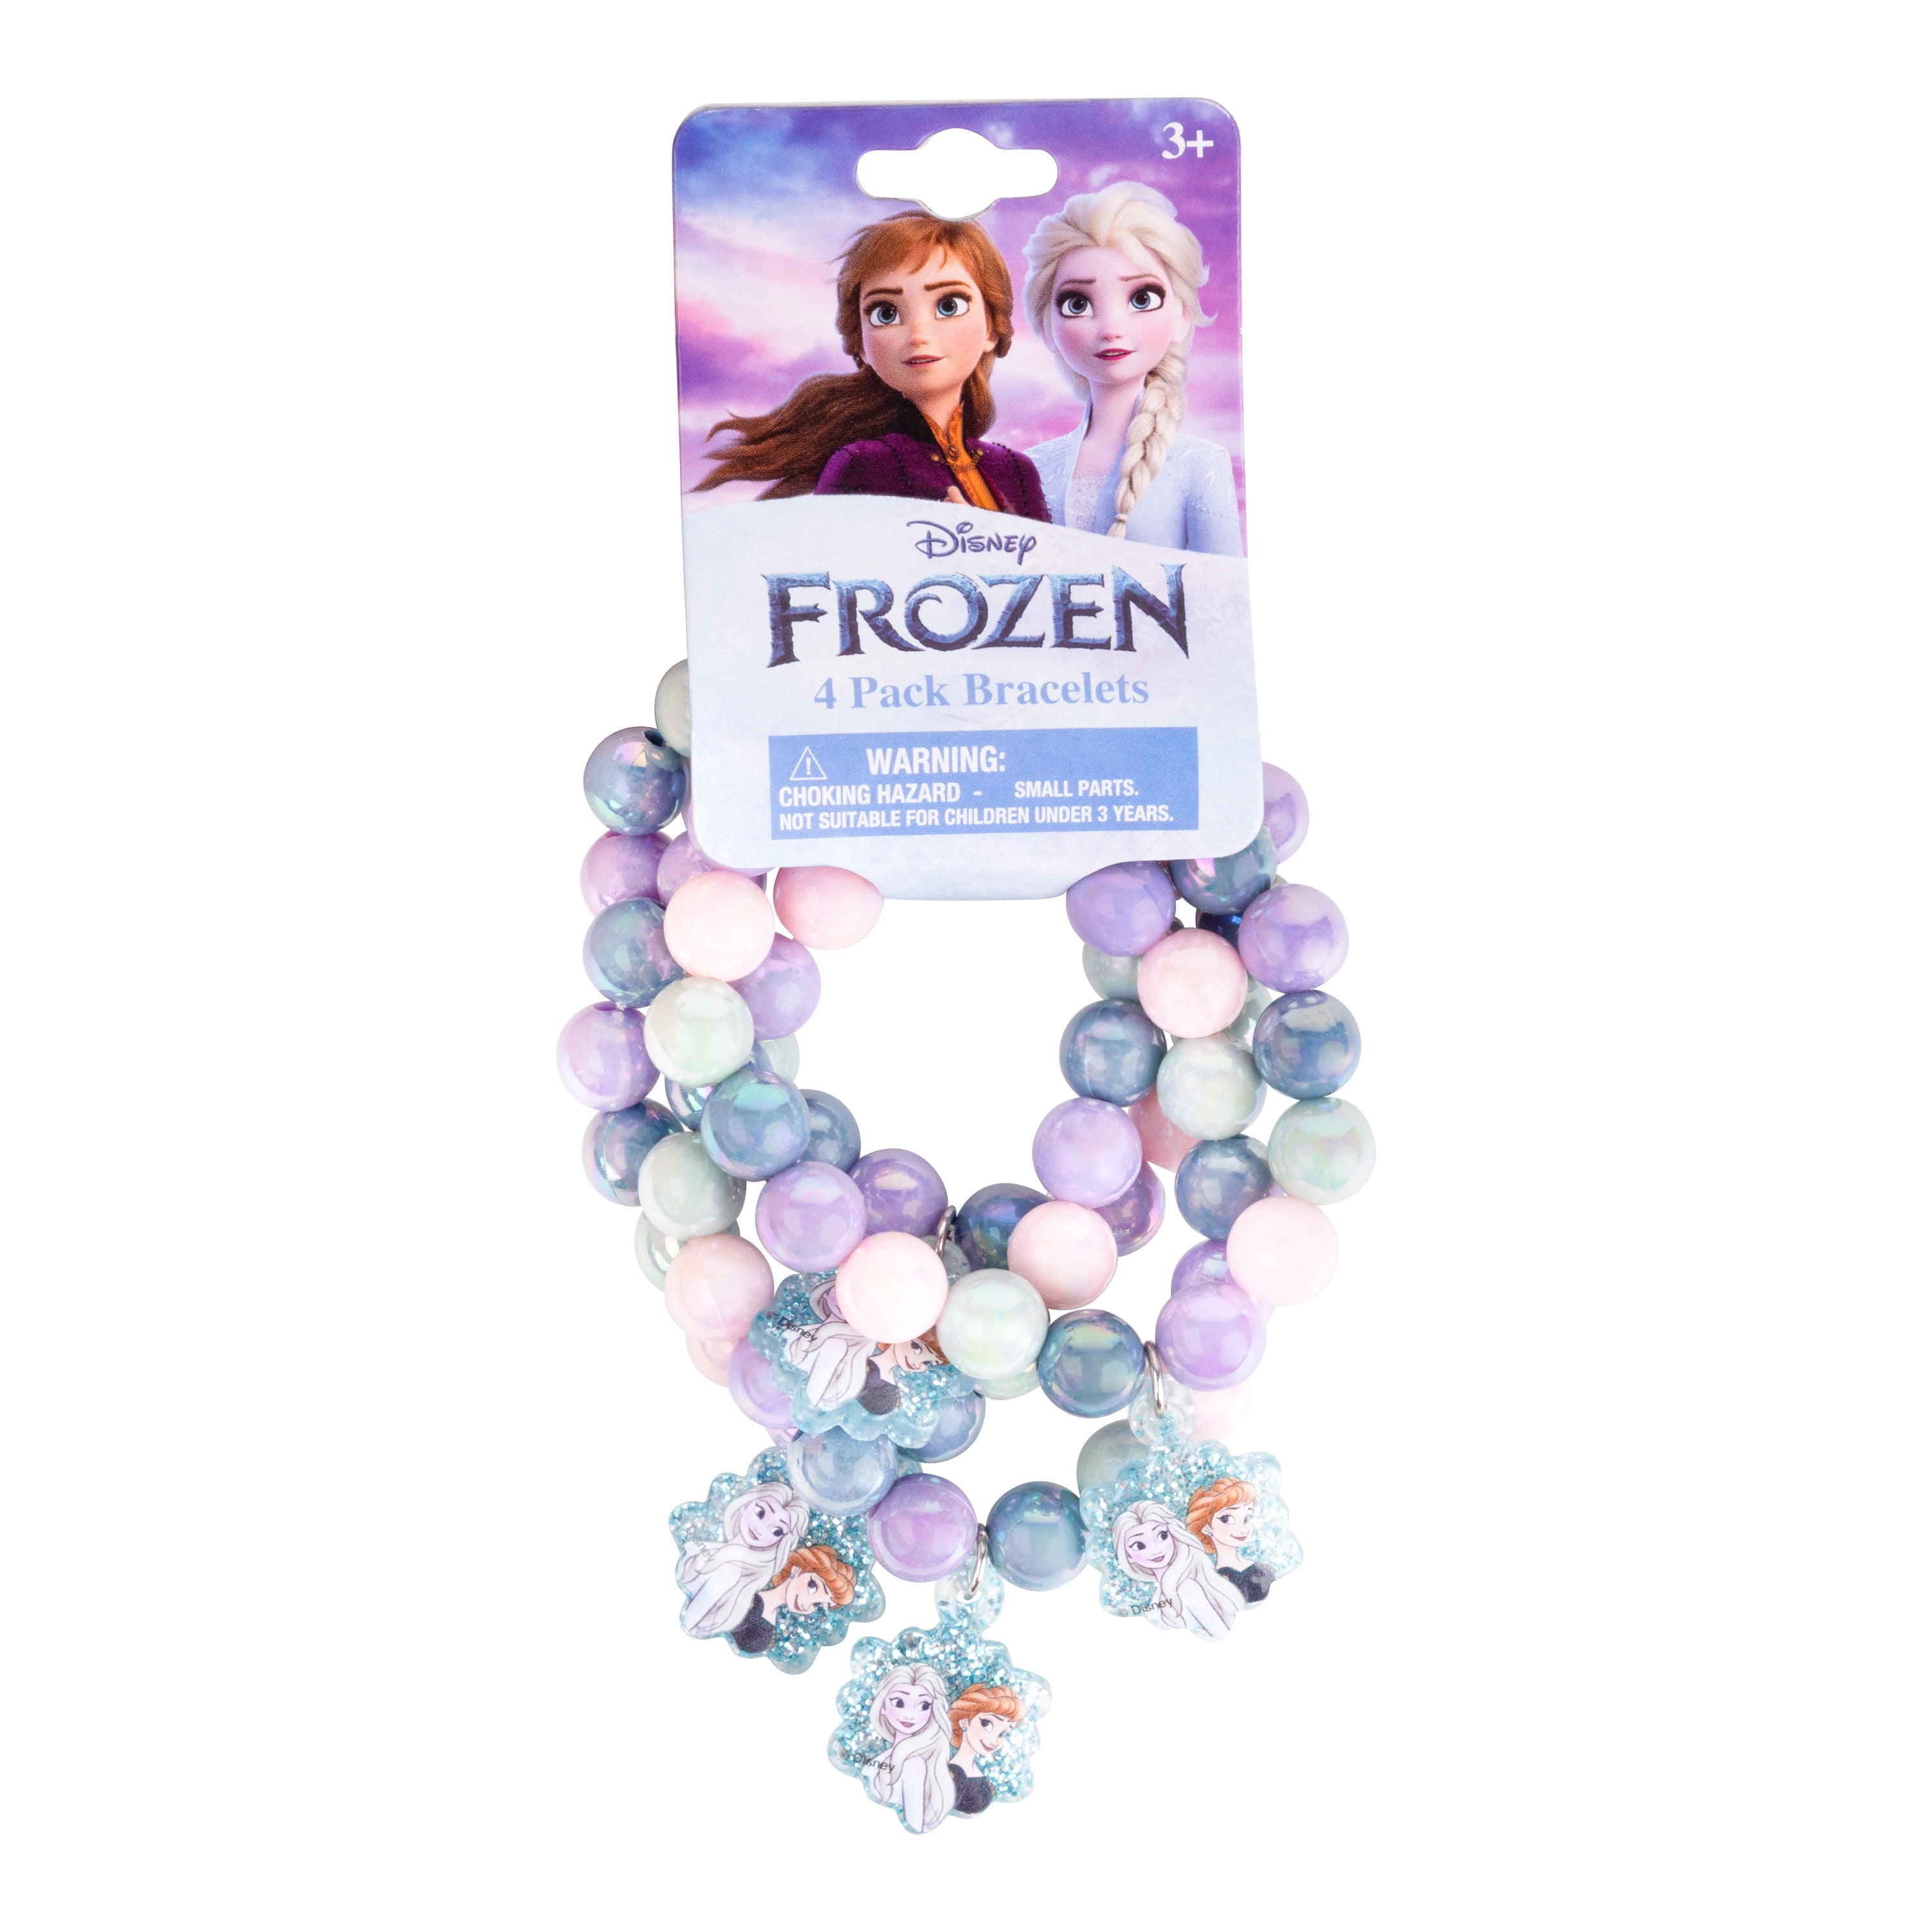 Disney Frozen 4 Pack - Walmart.com